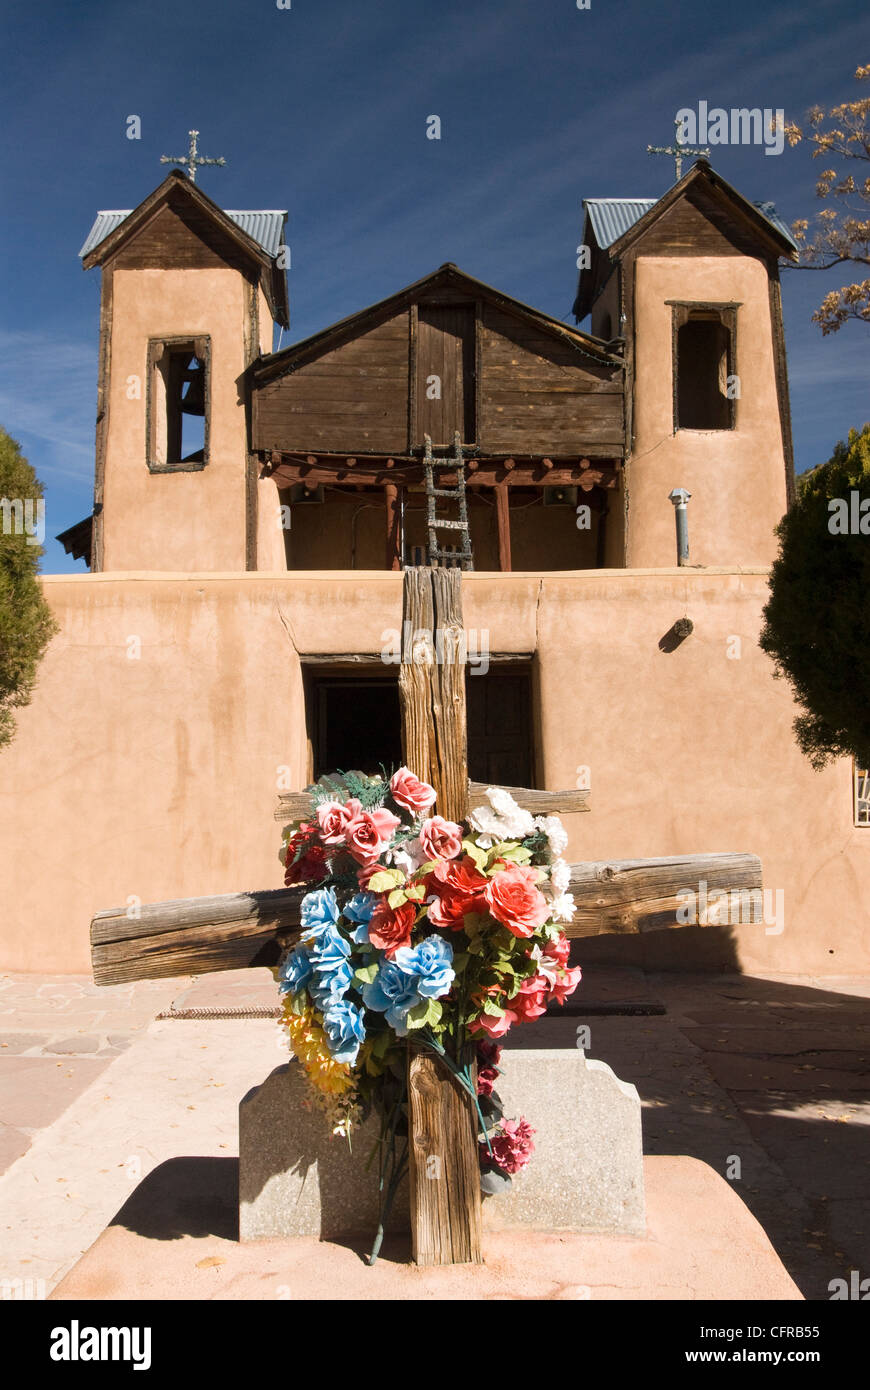 El Santuario De Chimayo, costruito nel 1816, Chimayo, Nuovo Messico, Stati Uniti d'America, America del Nord Foto Stock